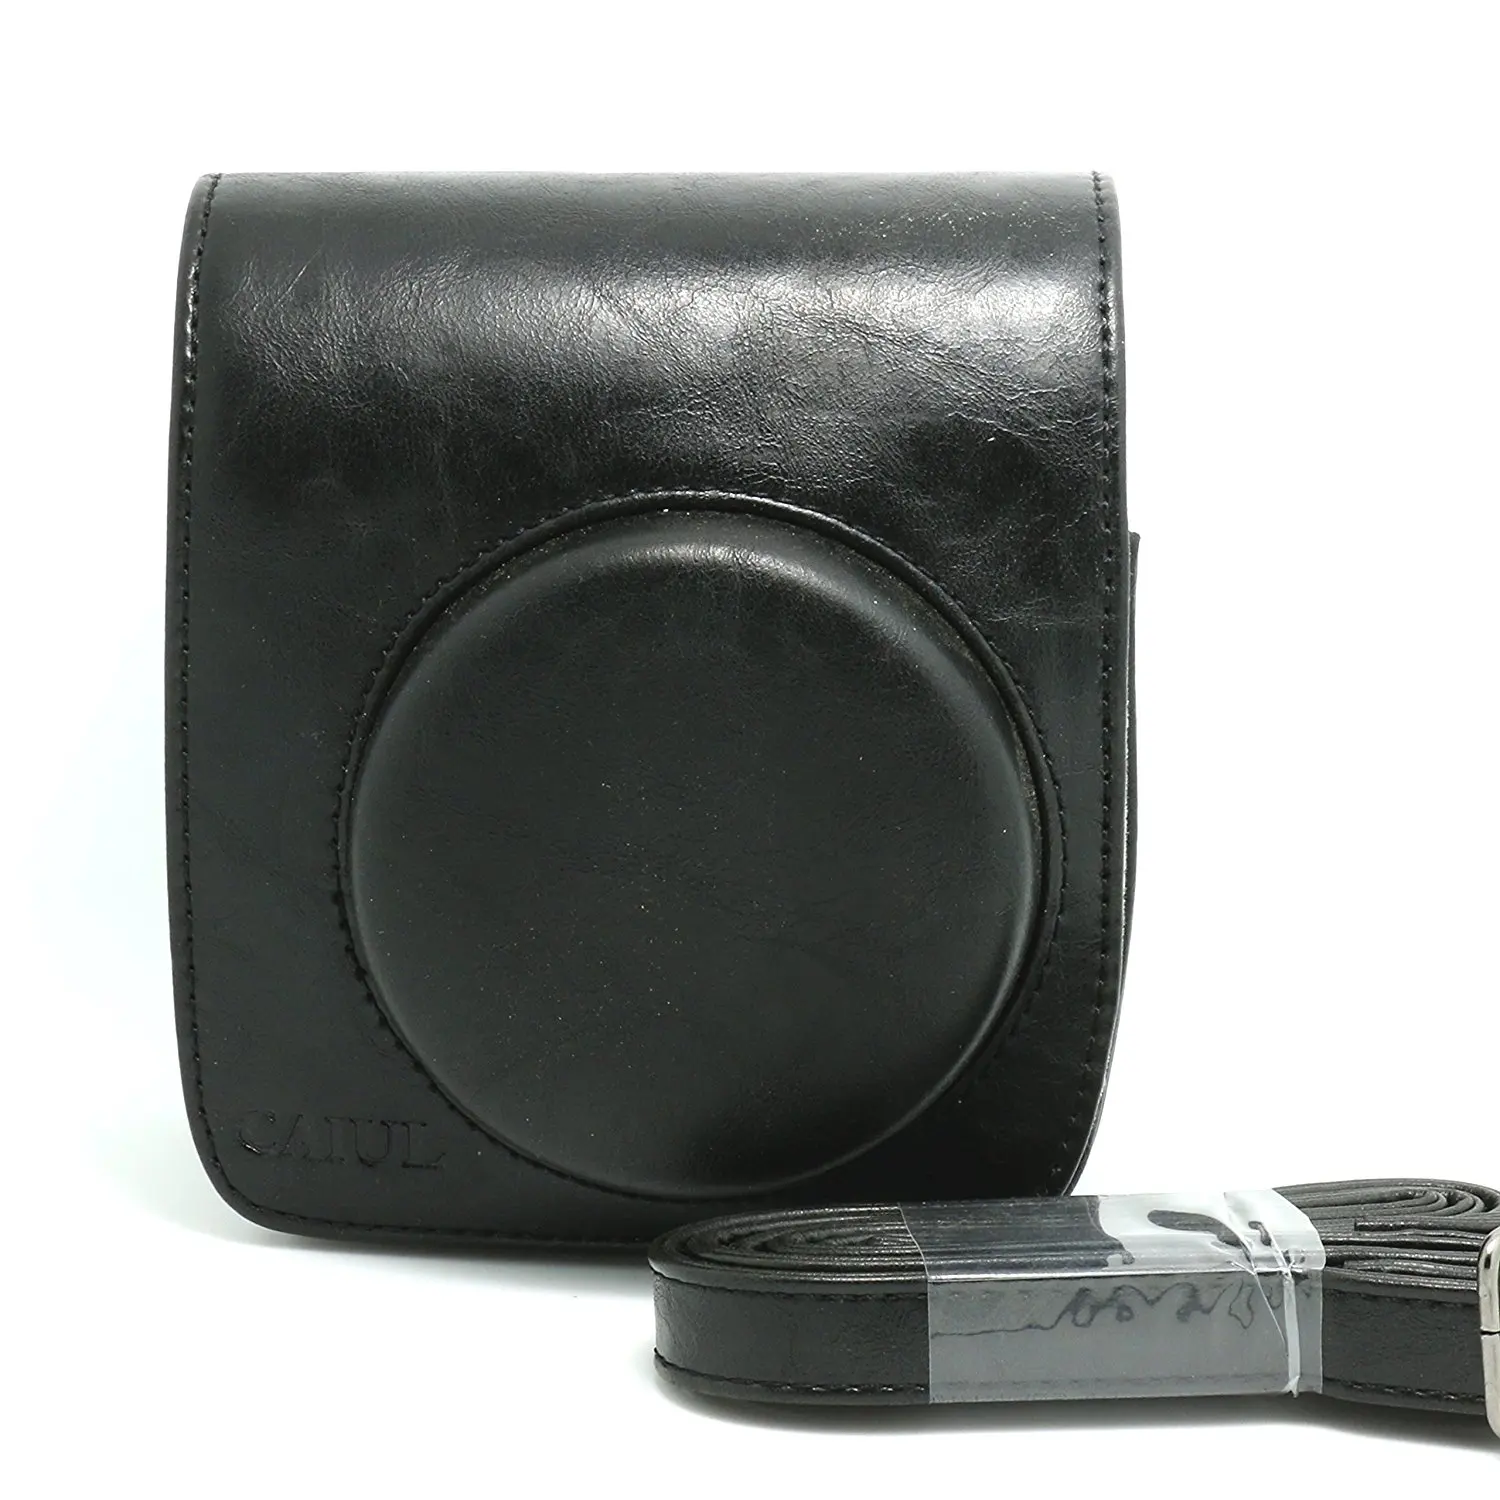 Сумка для камеры в стиле ретро из искусственной кожи с плечевым ремнем для Fuji FUJIFILM Instax Mini 90 чехол для переноски камеры защитный чехол кофейного цвета